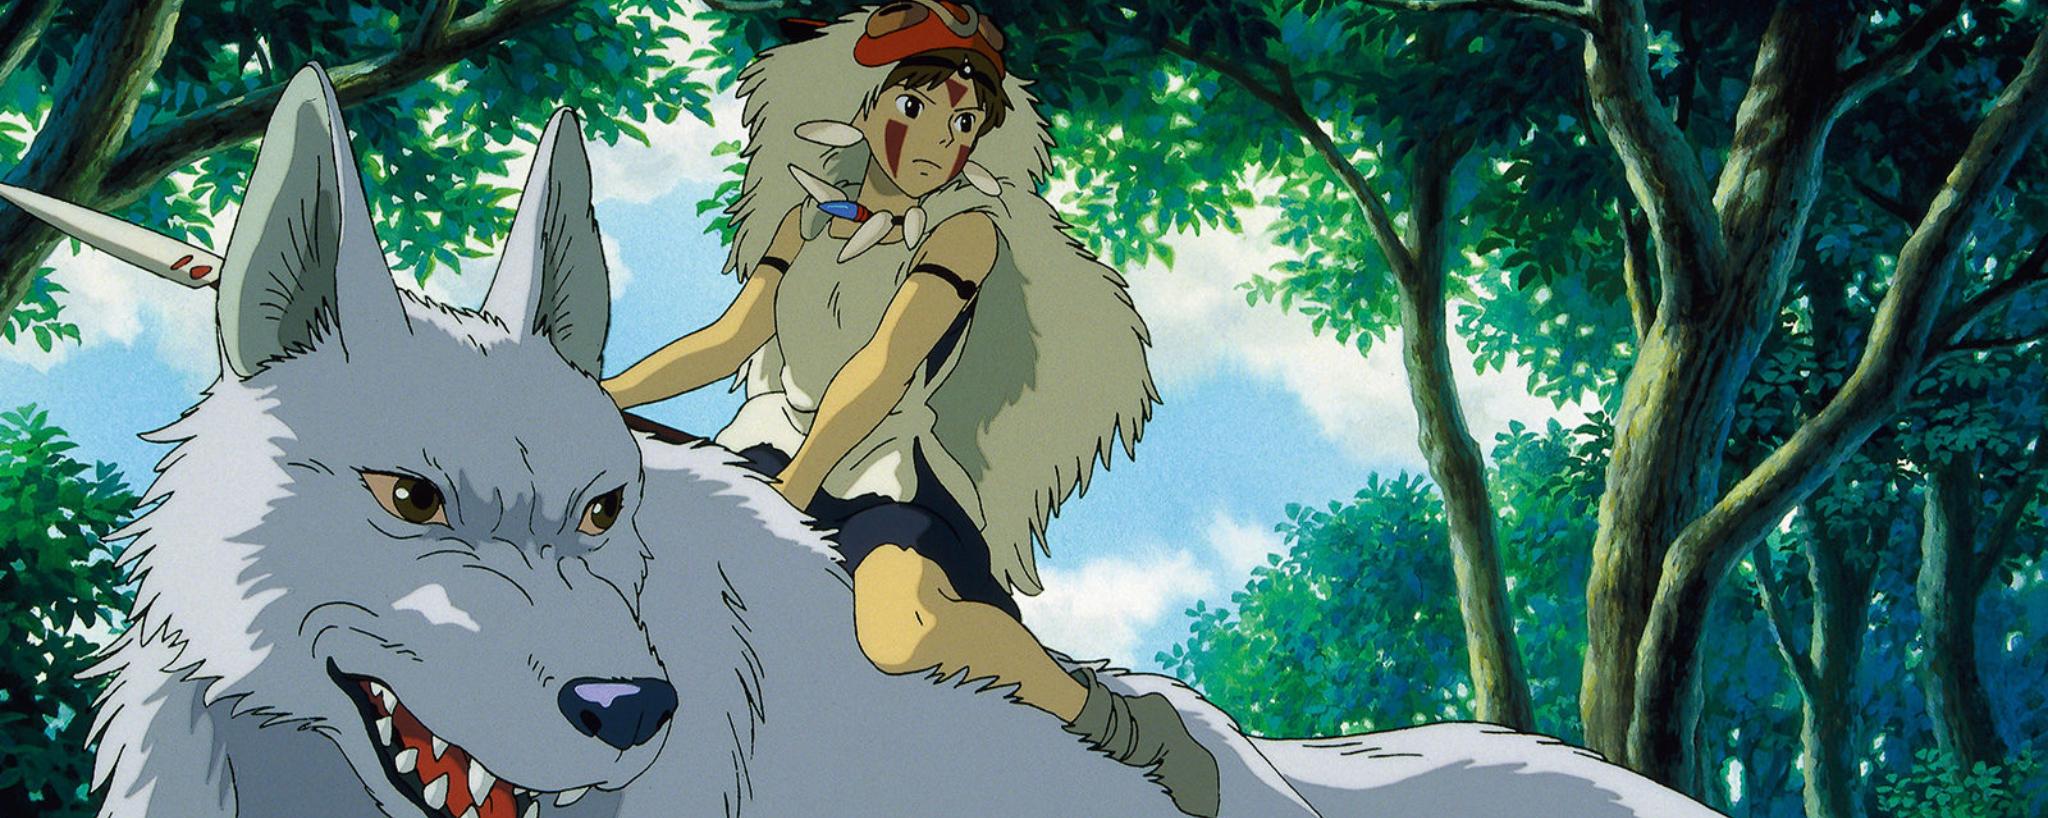 Princess Mononoke's San riding a wolf